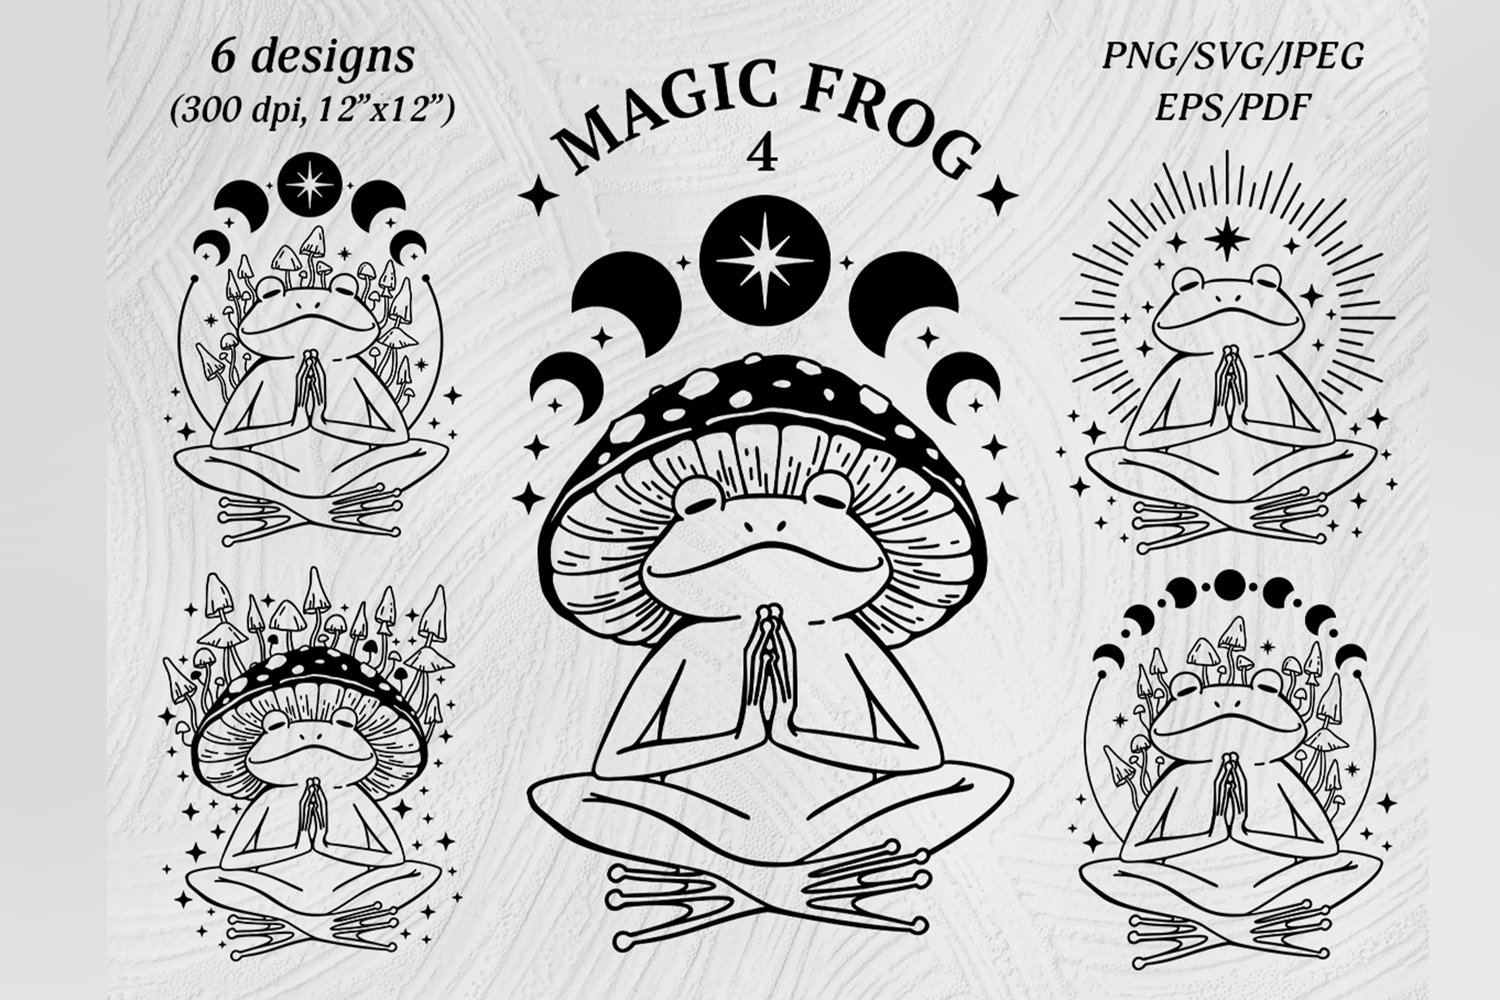 Cover image of Meditating Celestial Frog design.